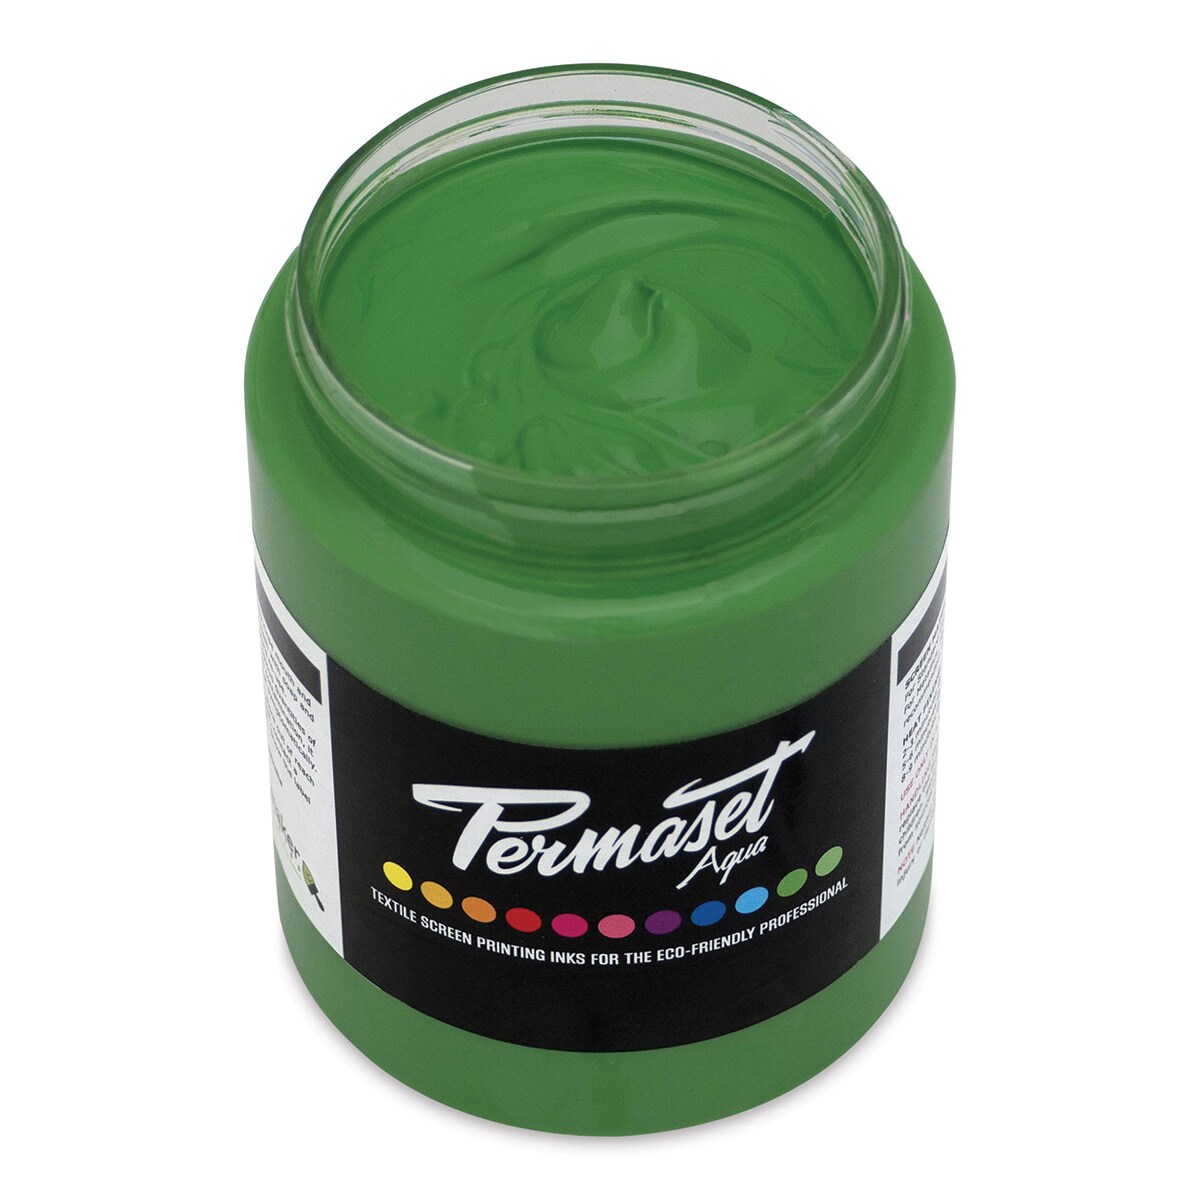 Permaset Aqua Fabric Ink - Supercover Mid Green, 300 ml | Michaels